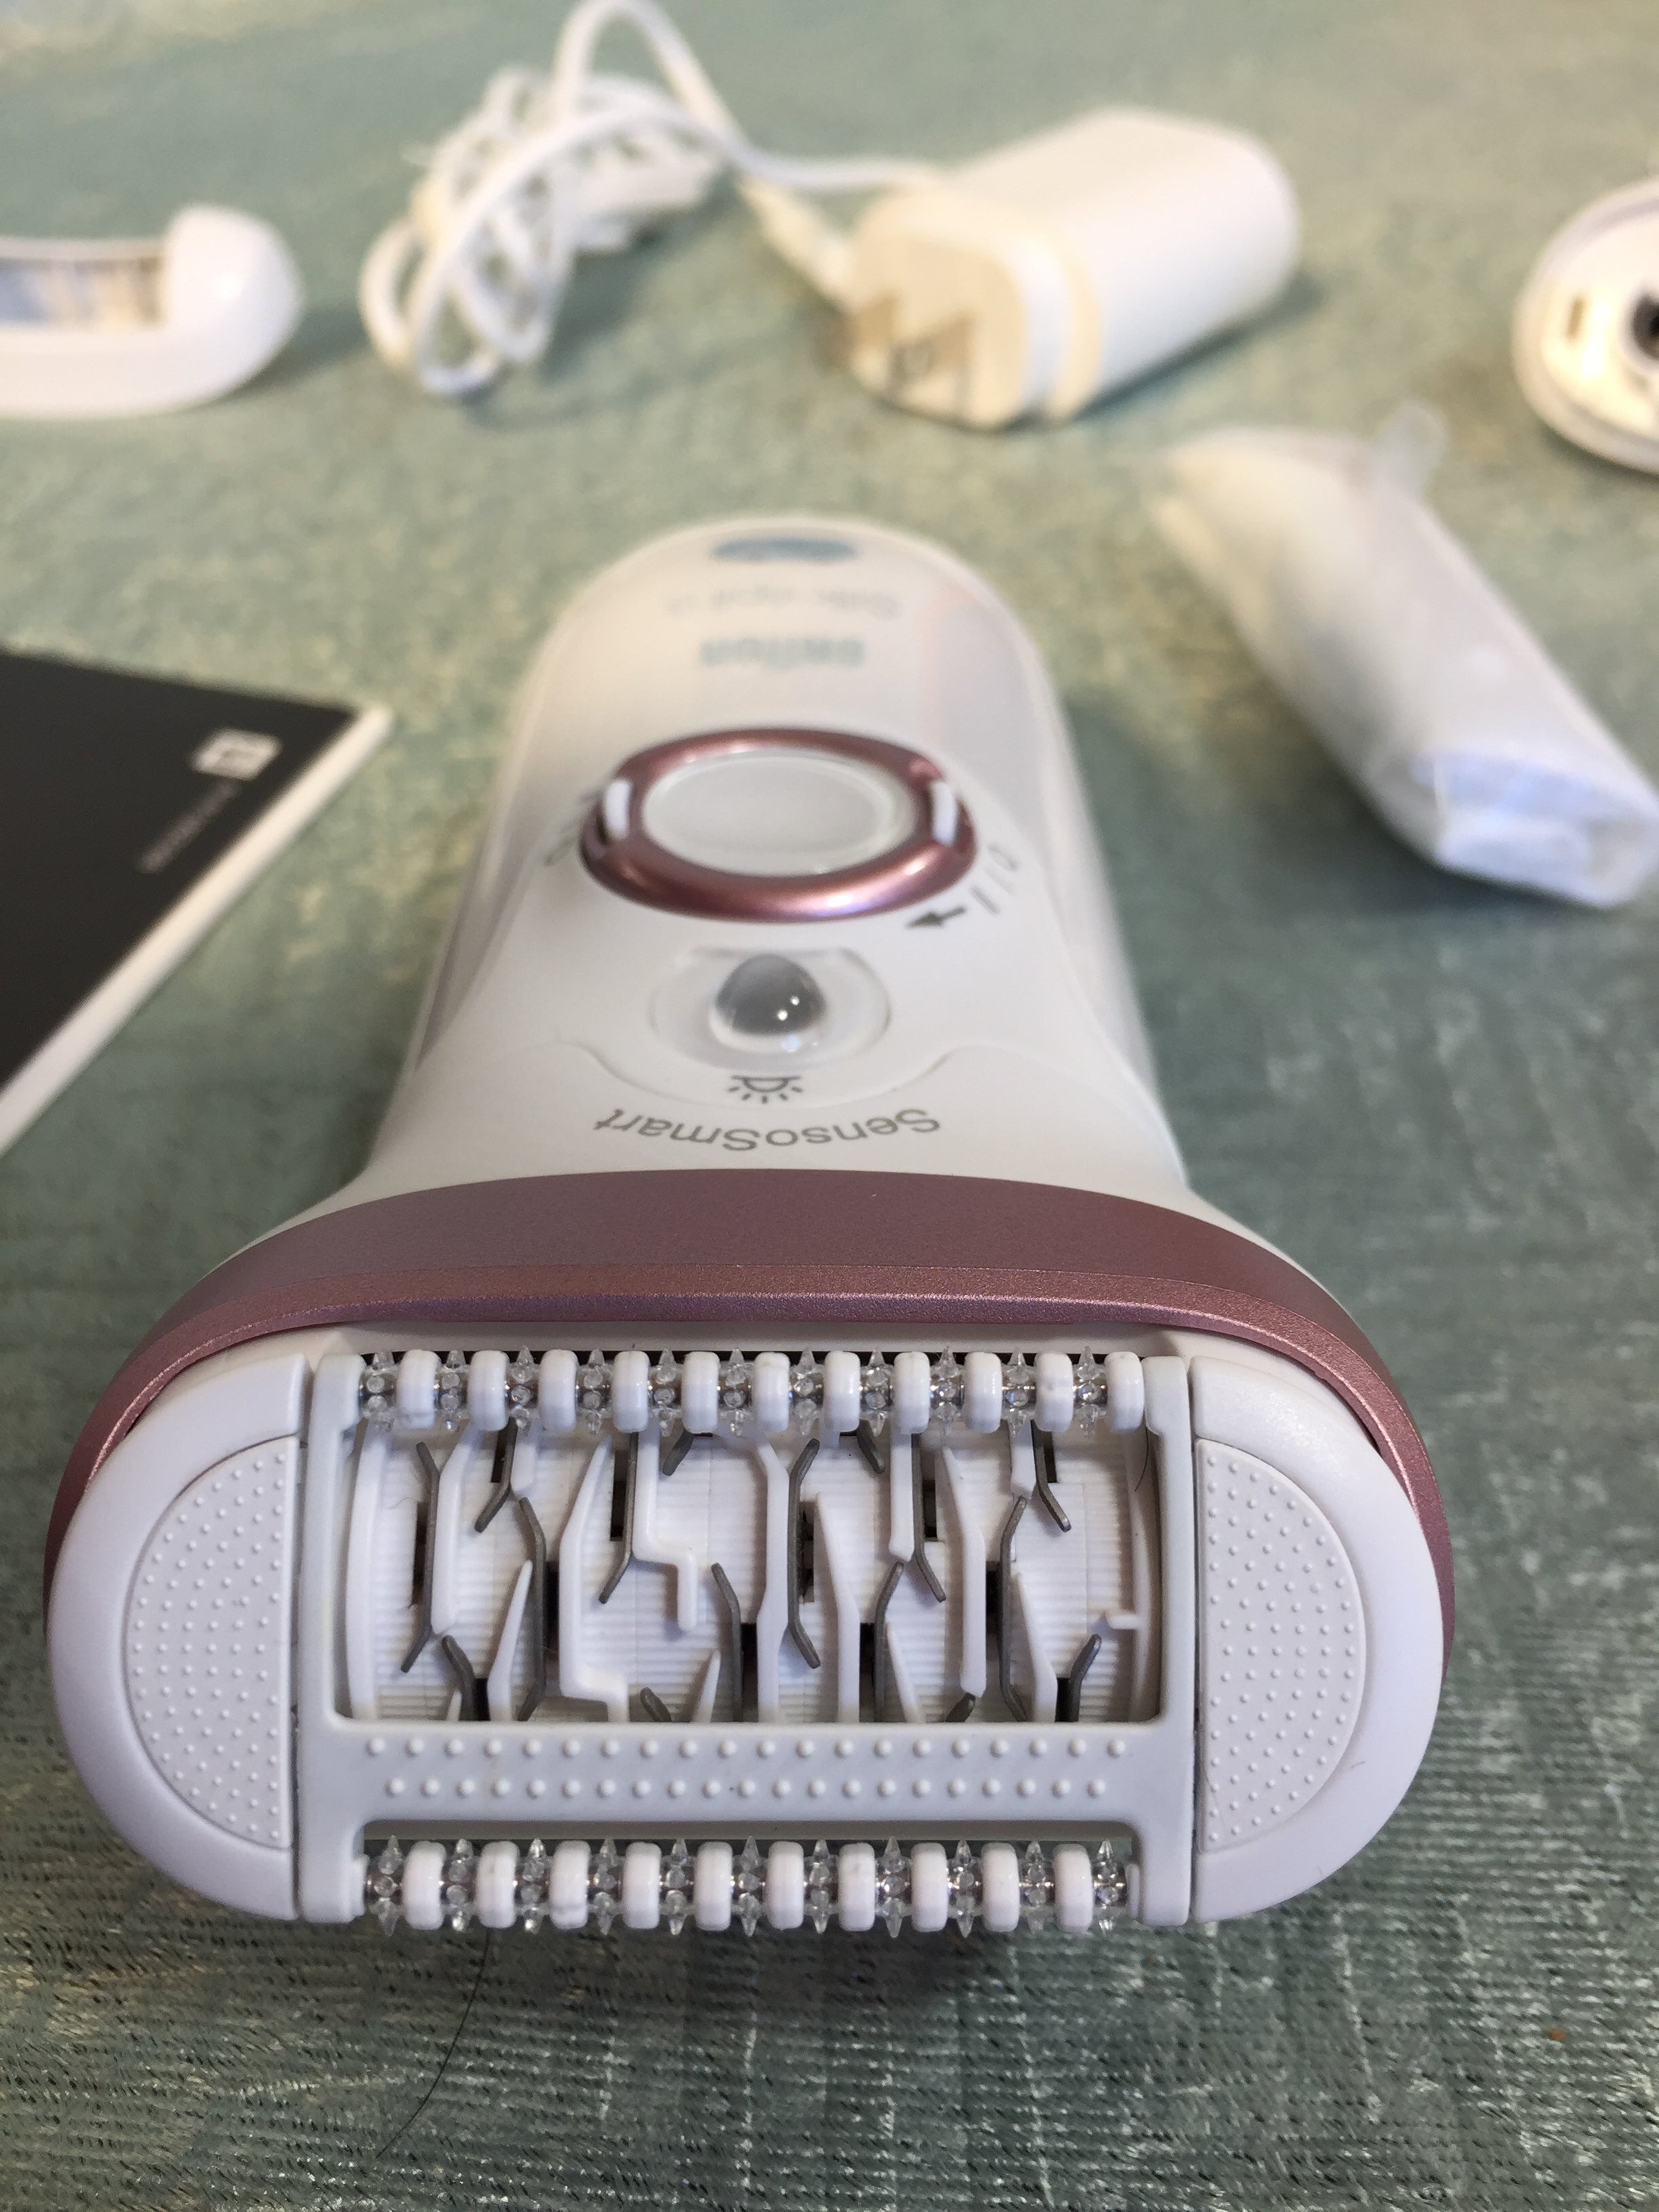 Braun Epilator Silk-épil 9 9-720 Hair Removal for Women, Wet/Dry Shaver Cordless (7516131295470)